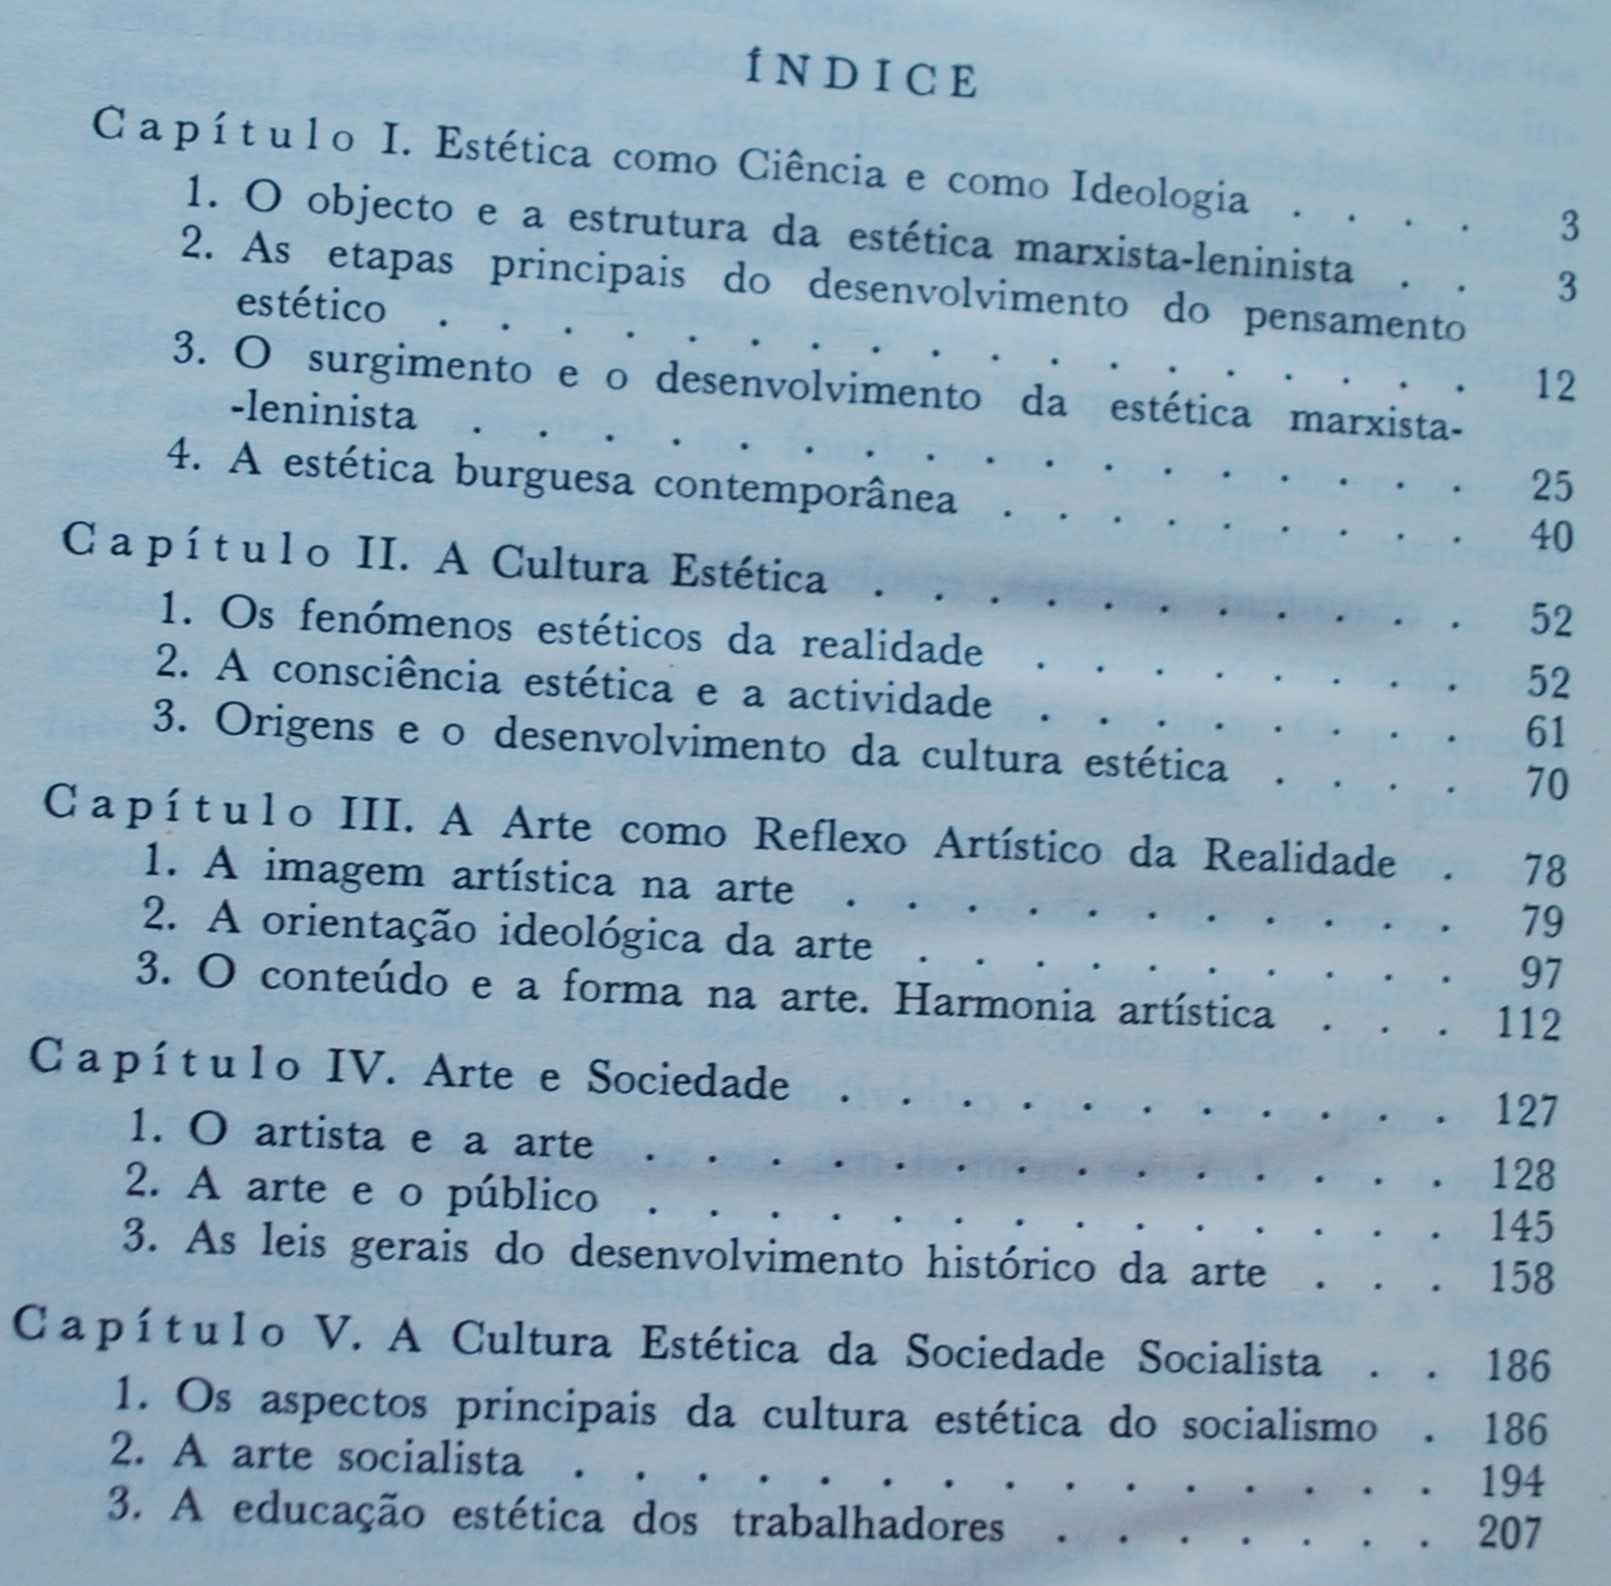 Fundamentos da Estética Marxista-Leninista - 1ª Edição 1982